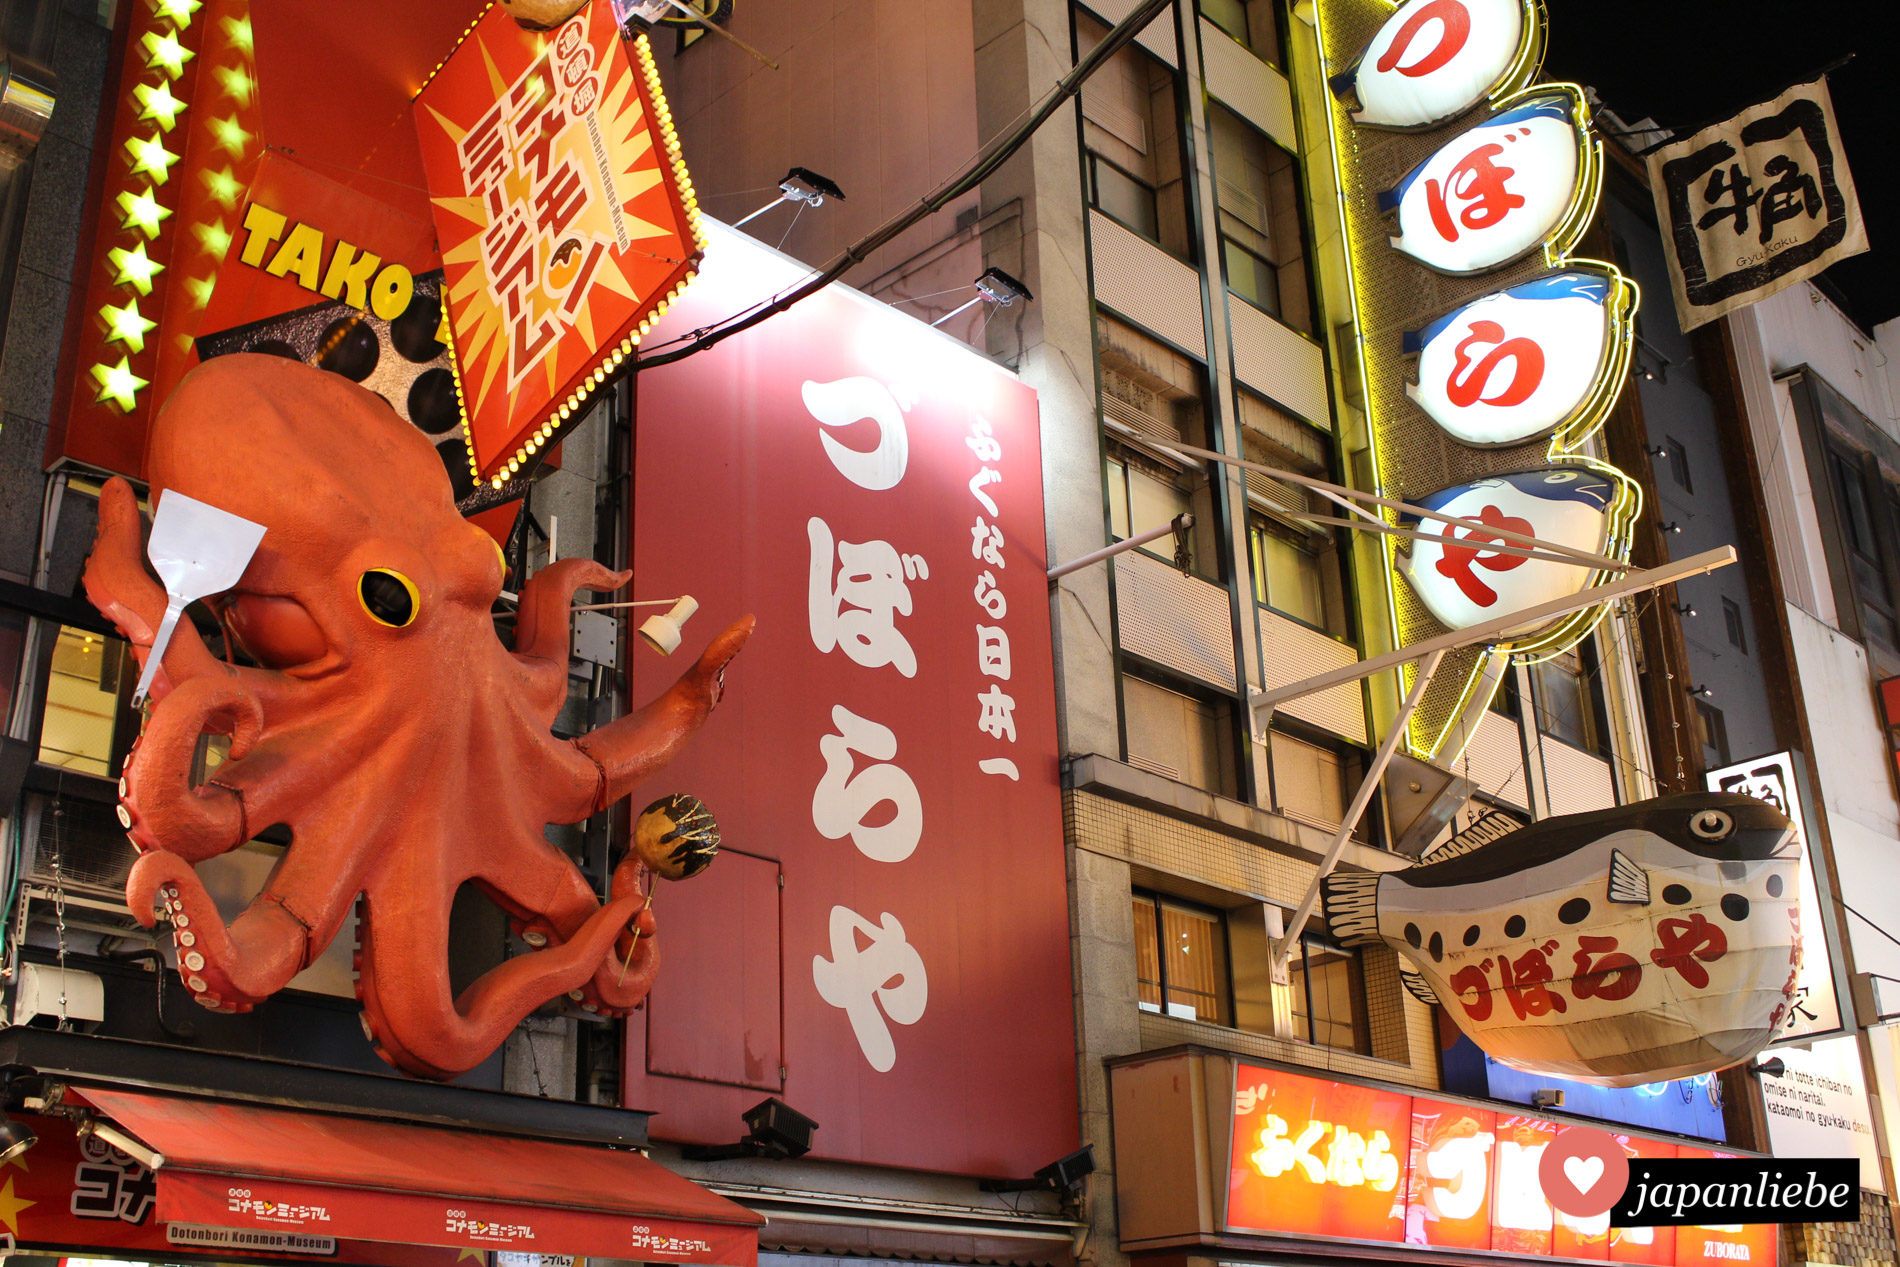 Ōsakas Dōtonbori erkennt man sofort an den kreativen Werbedisplays für lokale Spezialitäten wie takoyaki und fugu.